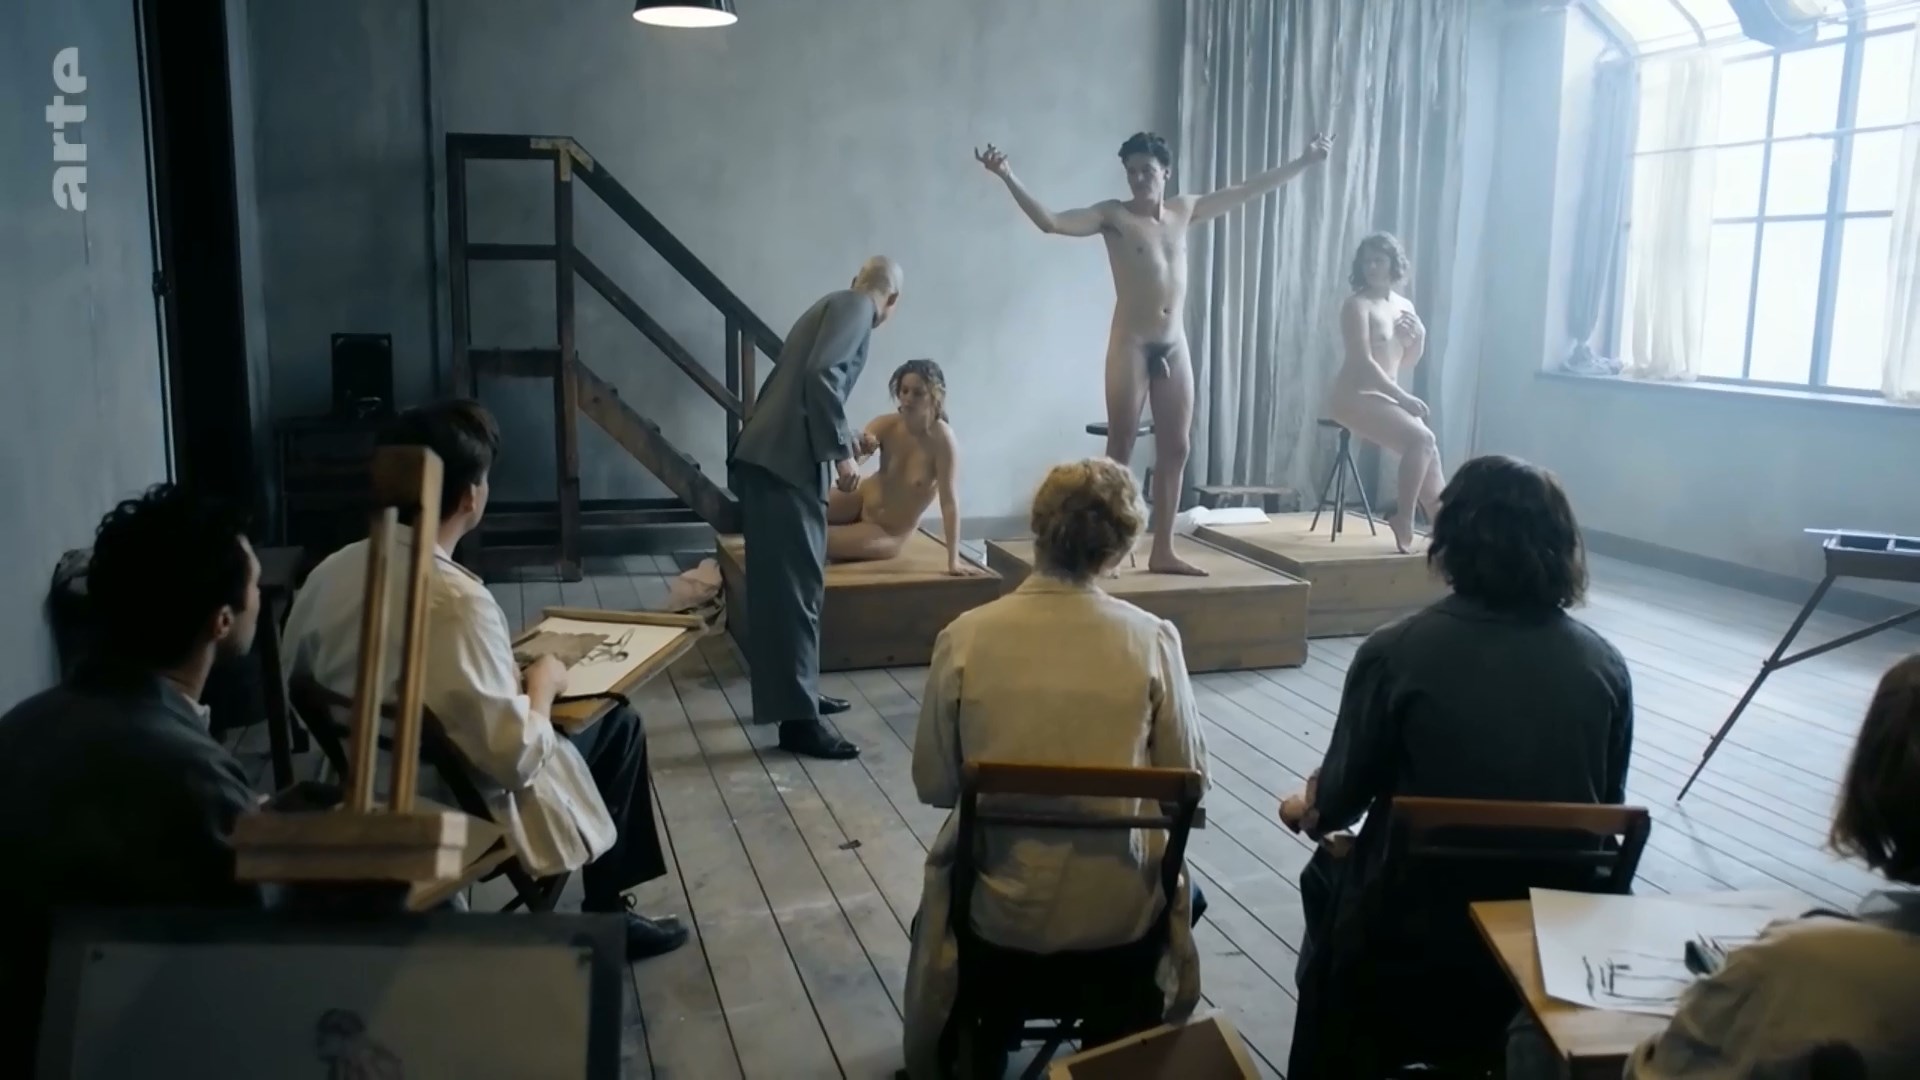 Nude Video Celebs Valerie Pachner Nude Die Neue Zeit S01e01 2019